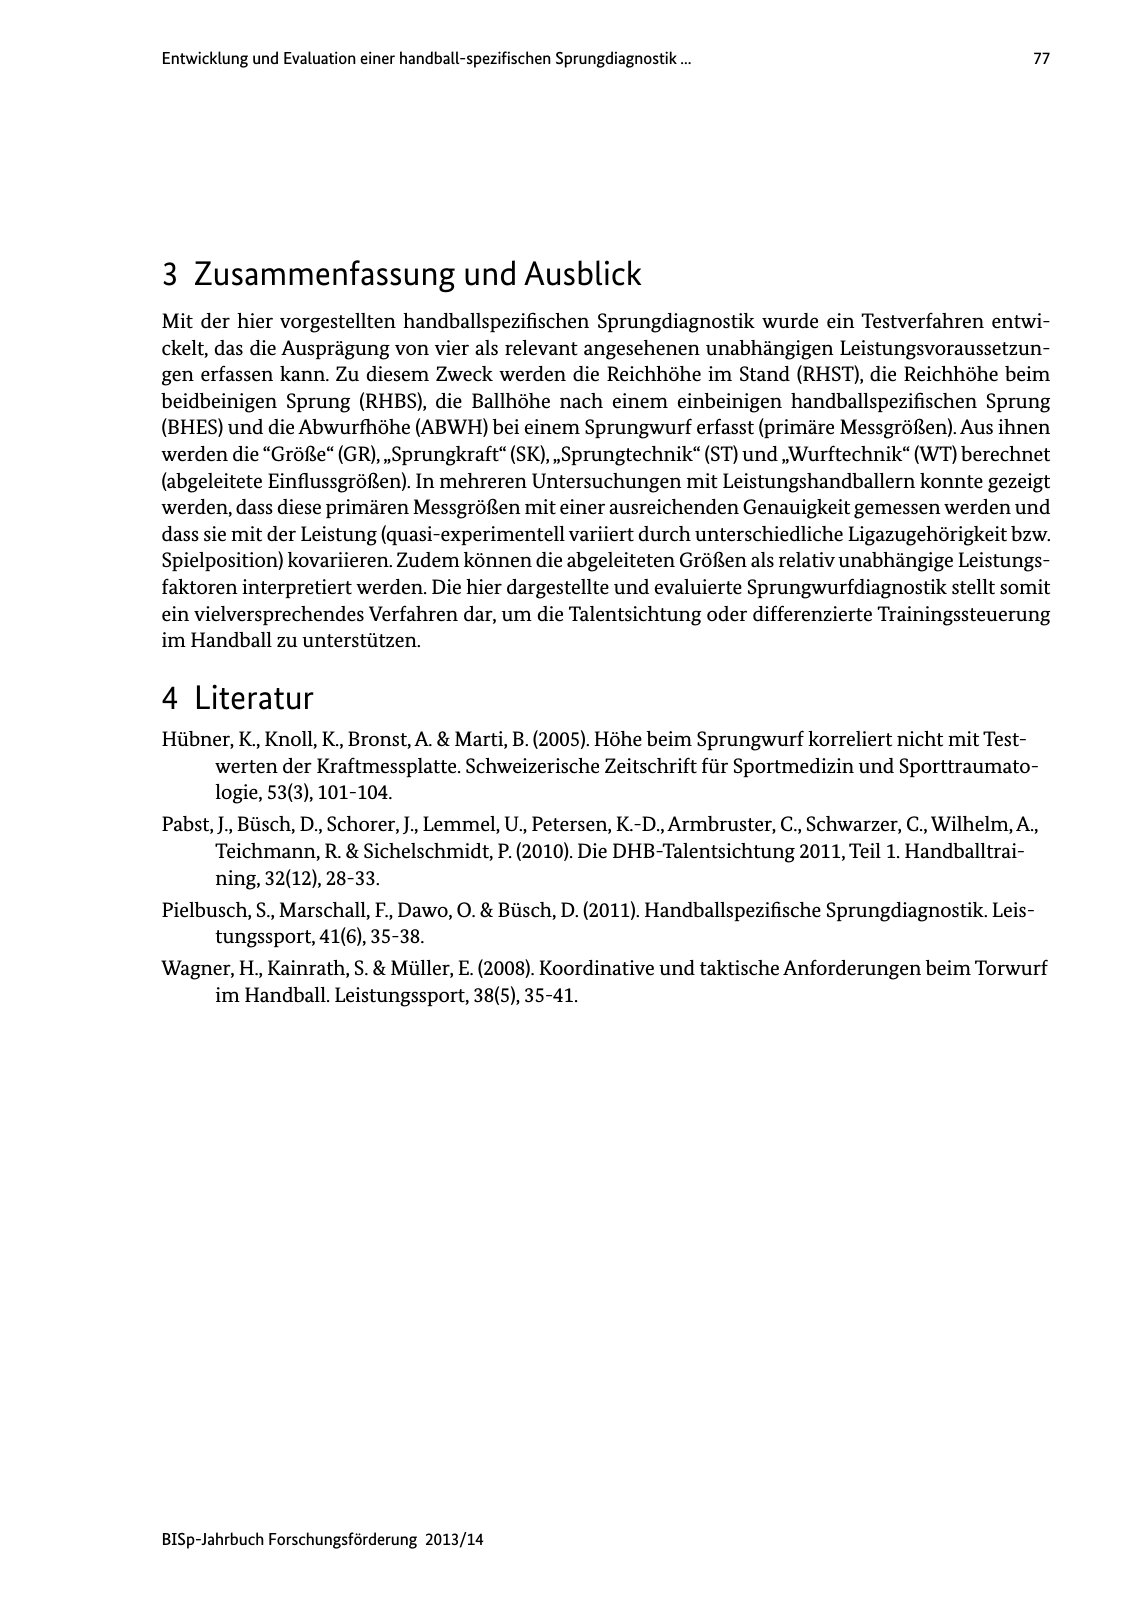 Vorschau BISp-Jahrbuch Forschungsförderung 2013/14 Seite 78